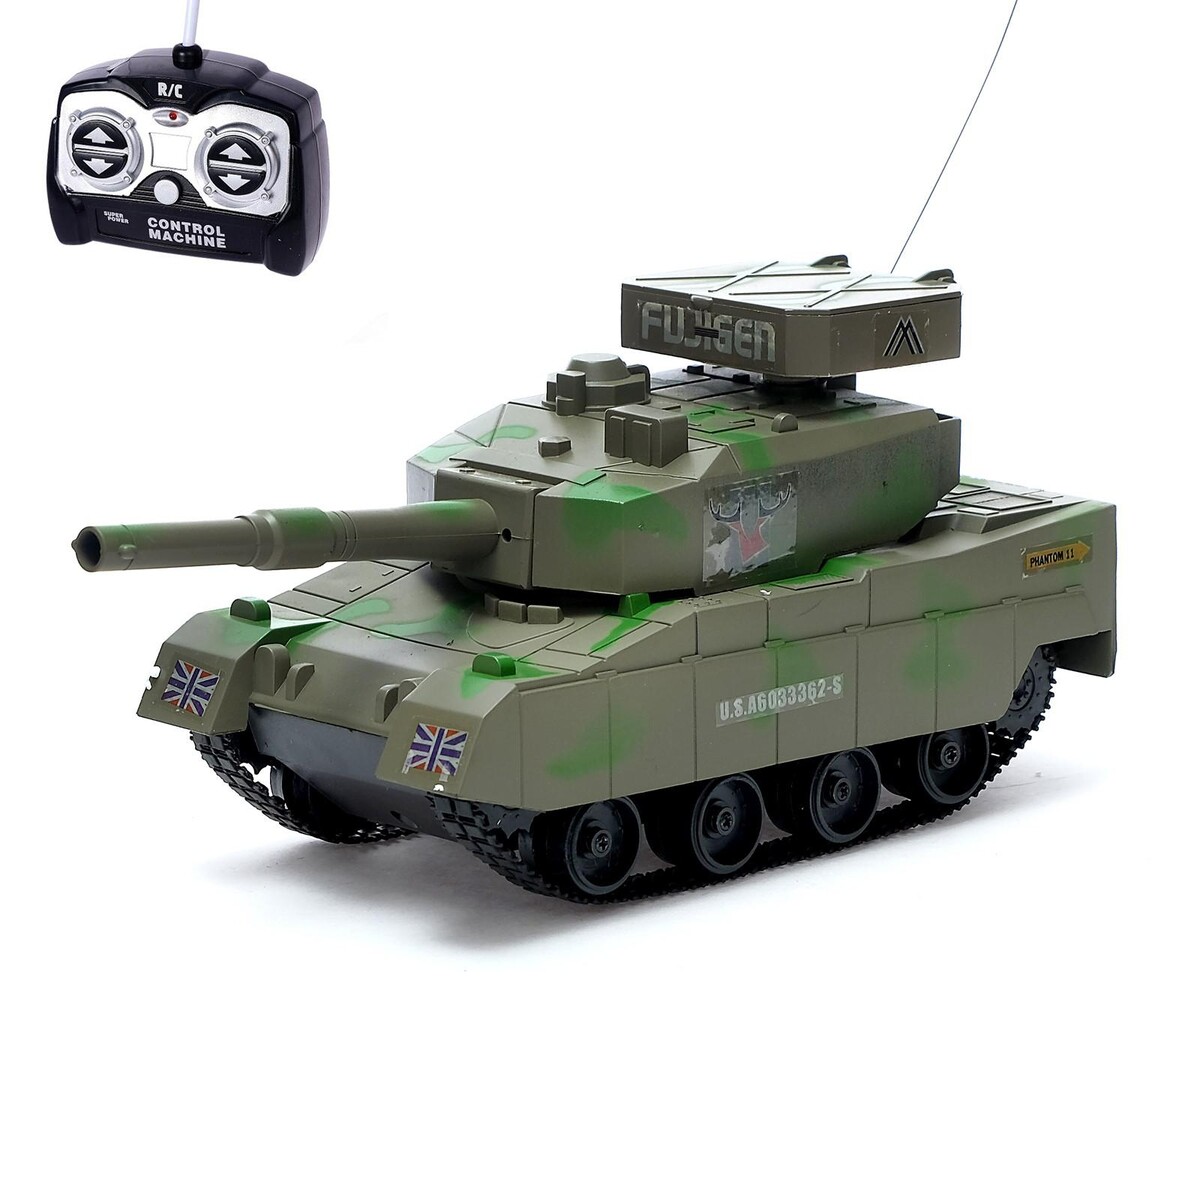 Танк радиоуправляемый радиоуправляемый танк your funny days с браслетом управления стреляет пулями голубой